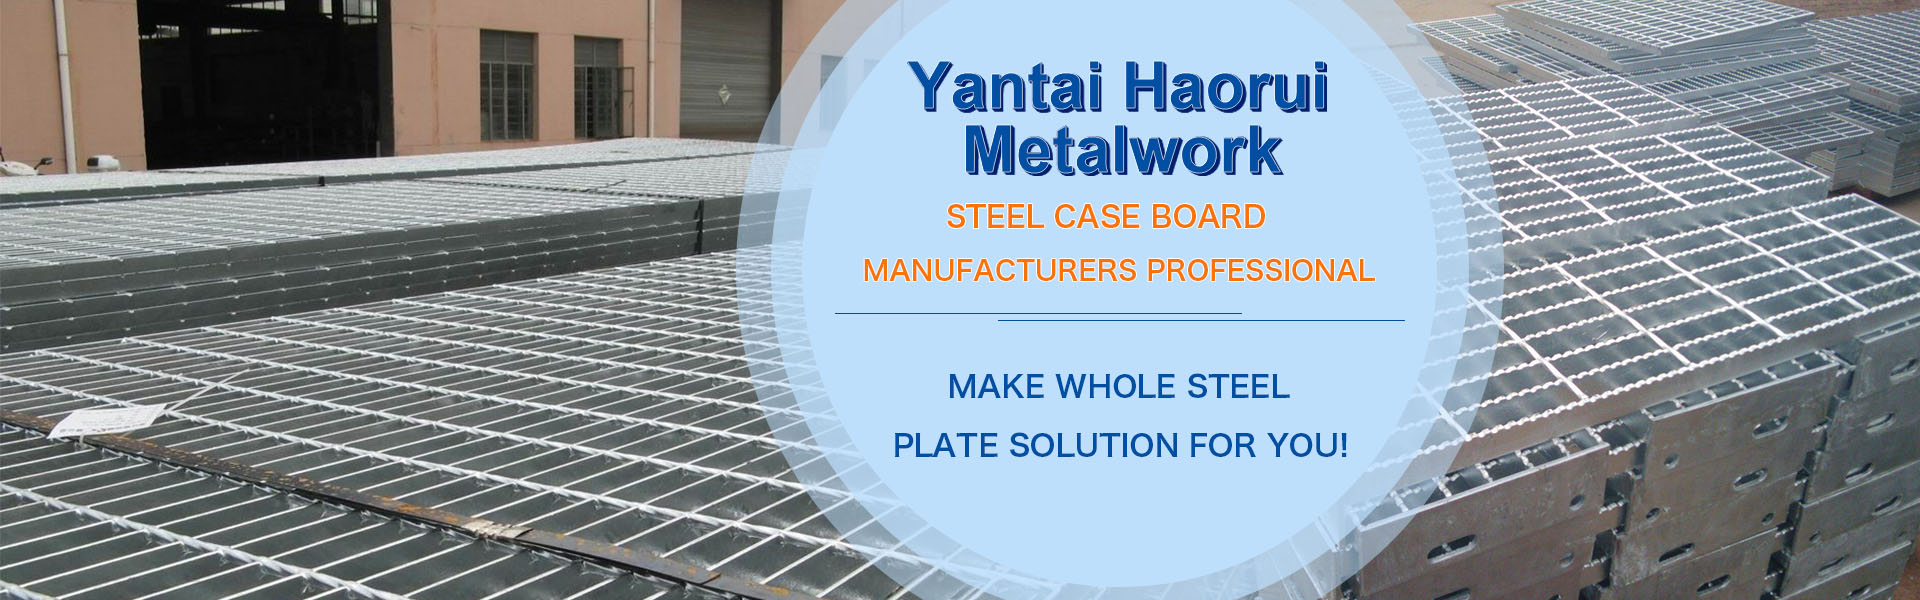 Yantai Haorui Metalwork Co., Ltd.